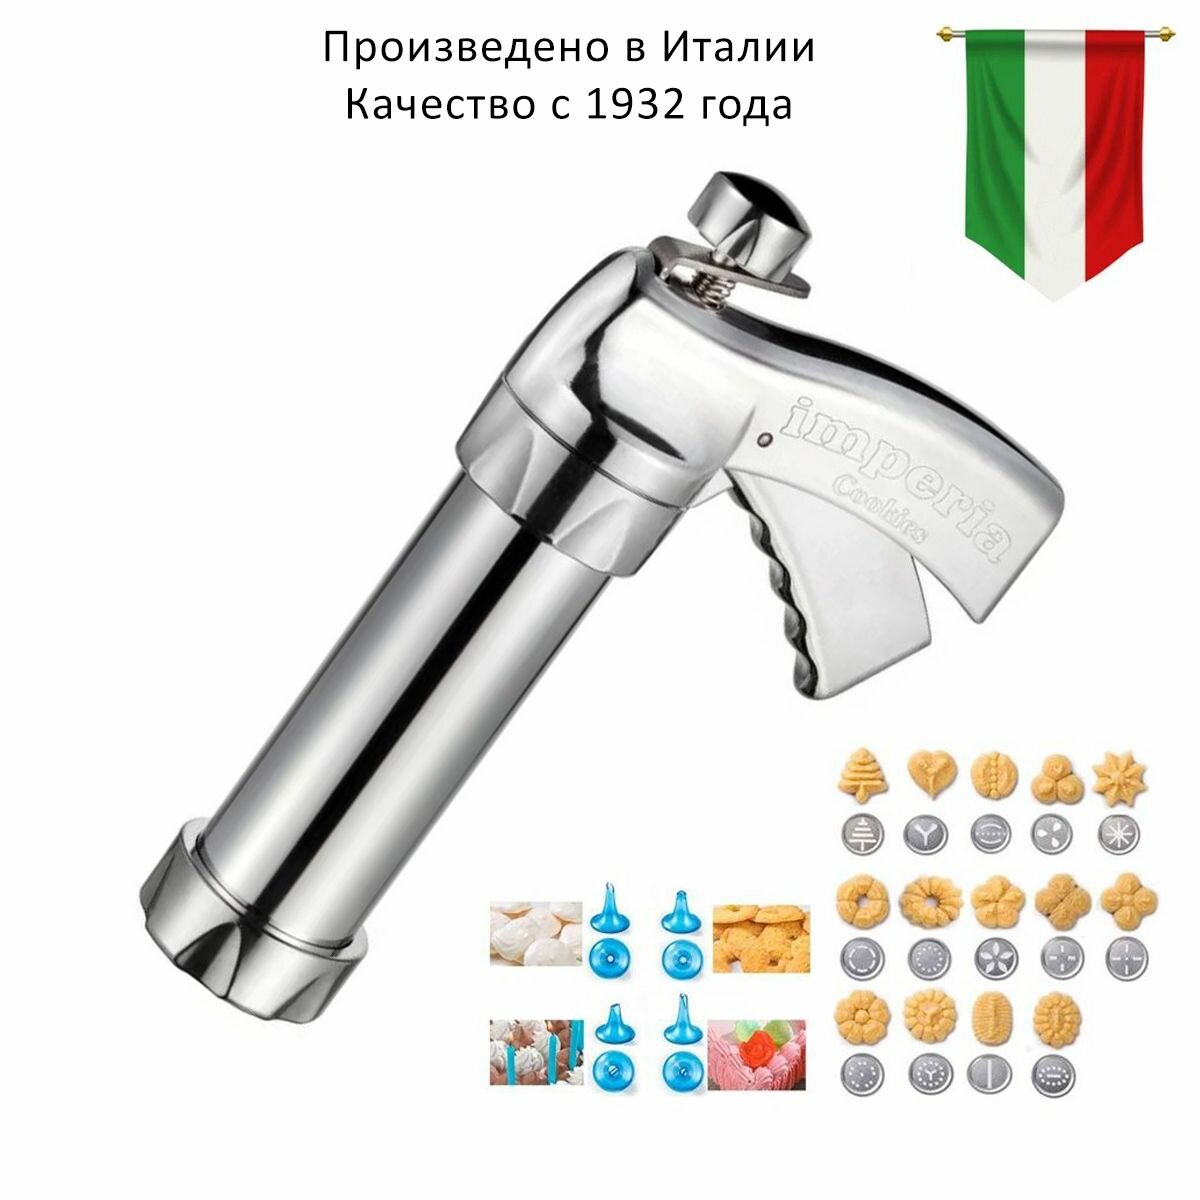 Итальянский металлический пресс-шприц для печенья и крема